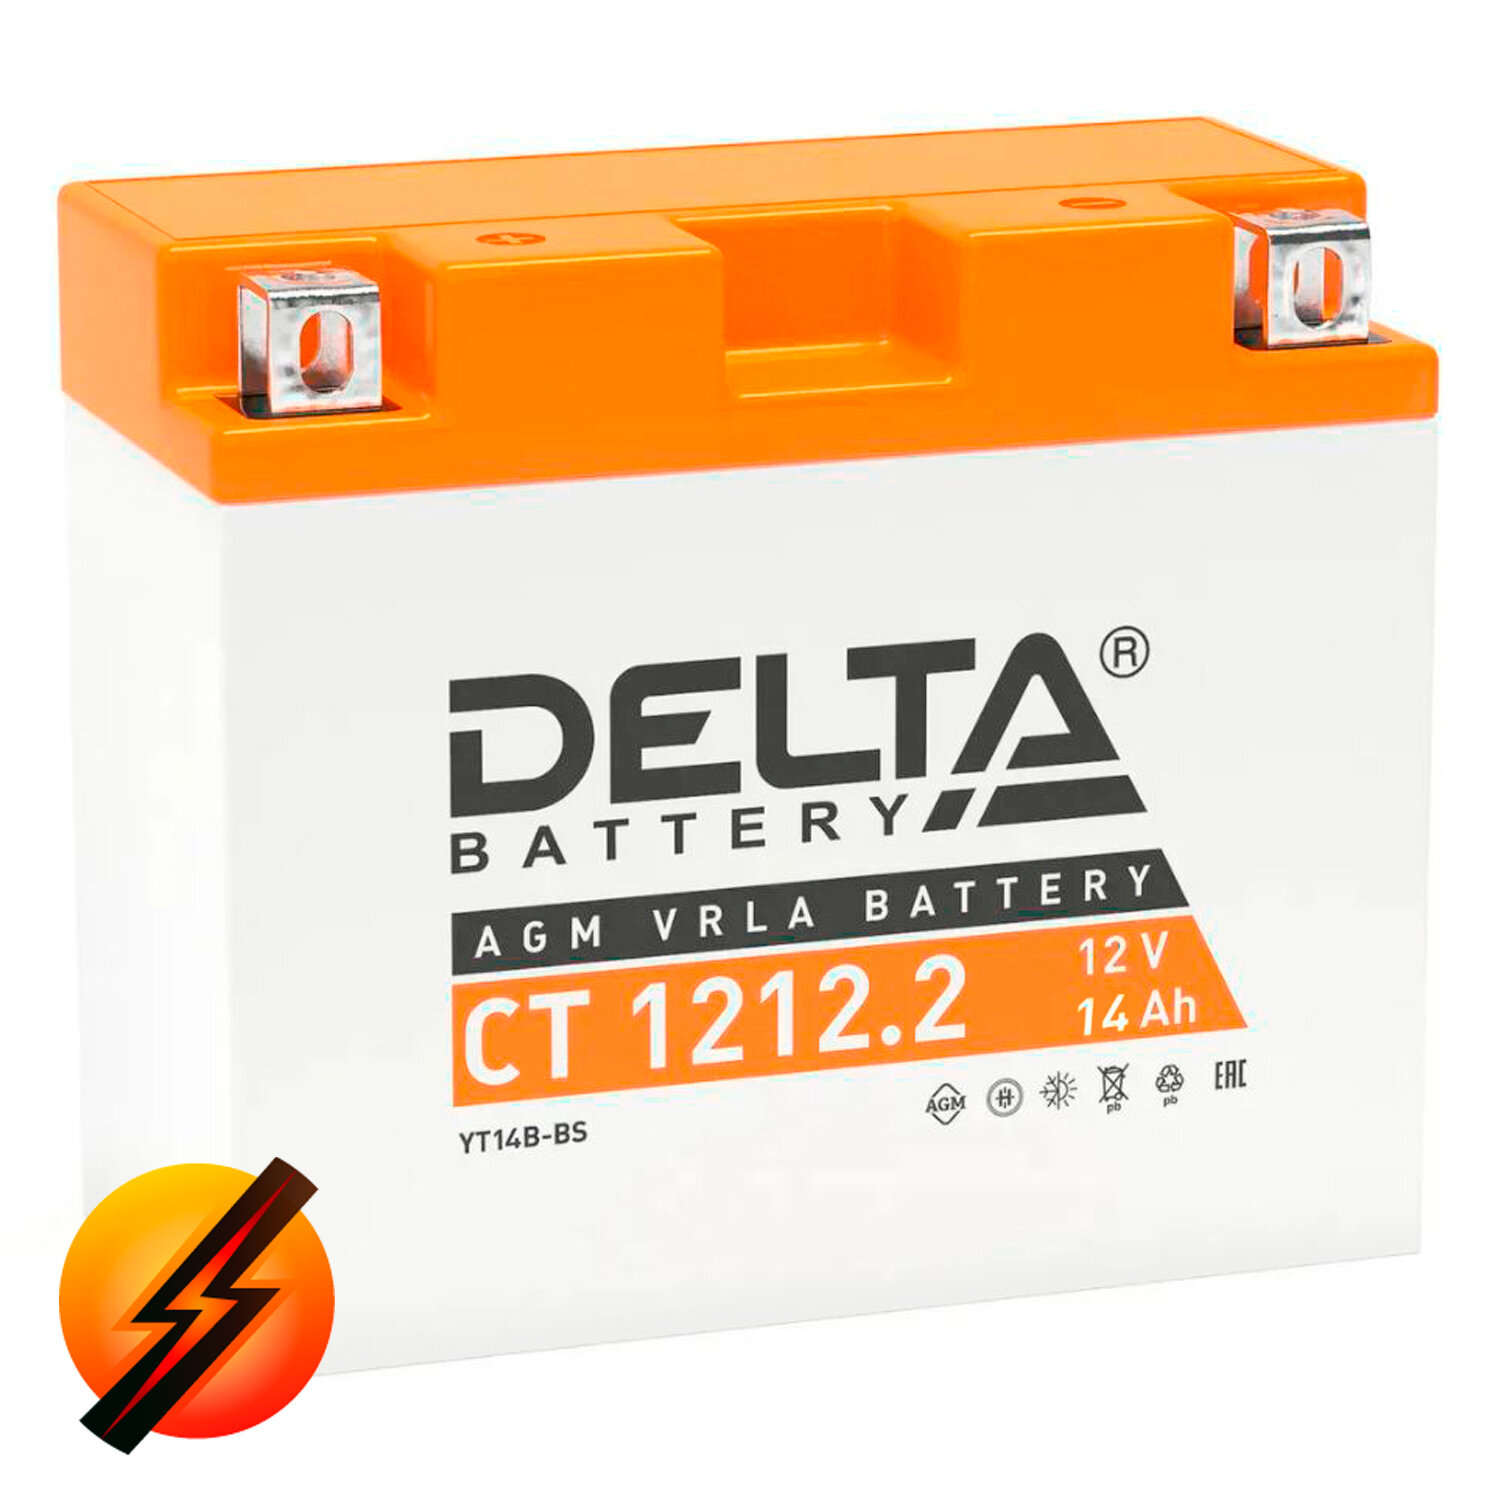 Аккумулятор мотоциклетный Delta CT1212.2 YT14B-BS 12V 12Ah AGM(залит и готов к применению)